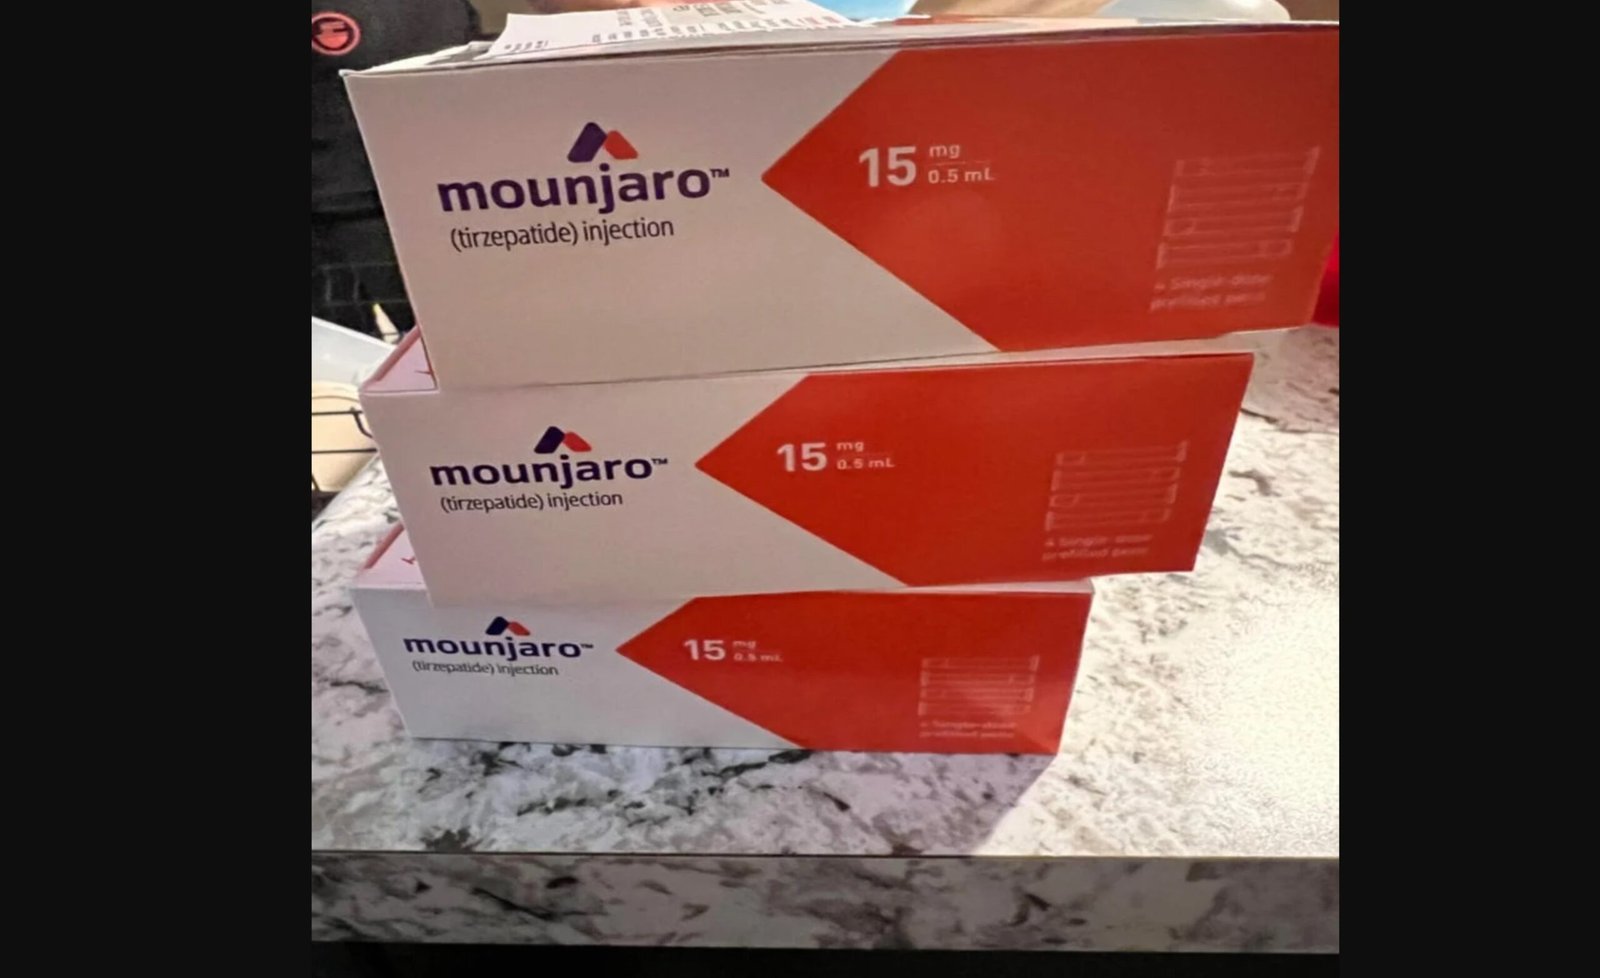 اشتري 15 مجم مونجارو عبر الإنترنت في البحرين مع التوصيل المجاني